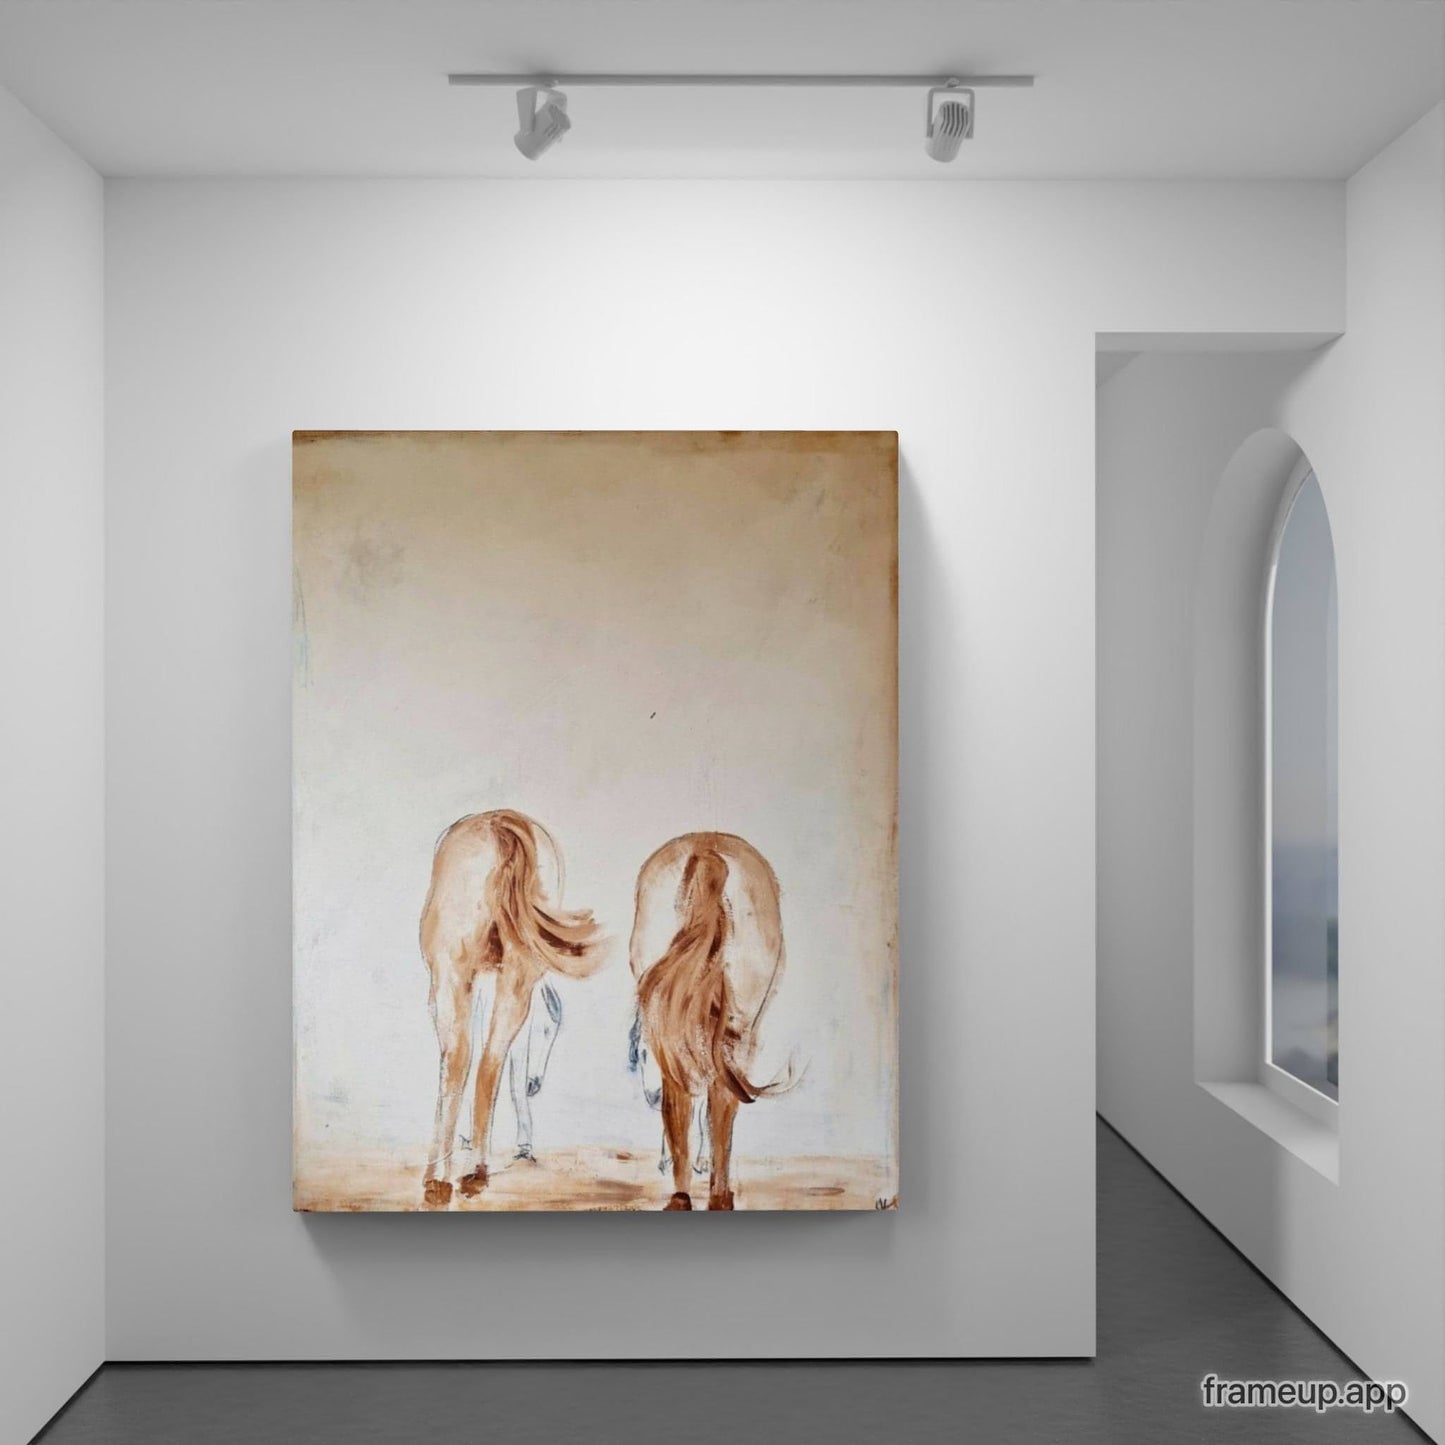  Elterliche Fürsorge / 190 x 150 cm / braun  abstrakte acrylbilder auf leinwand